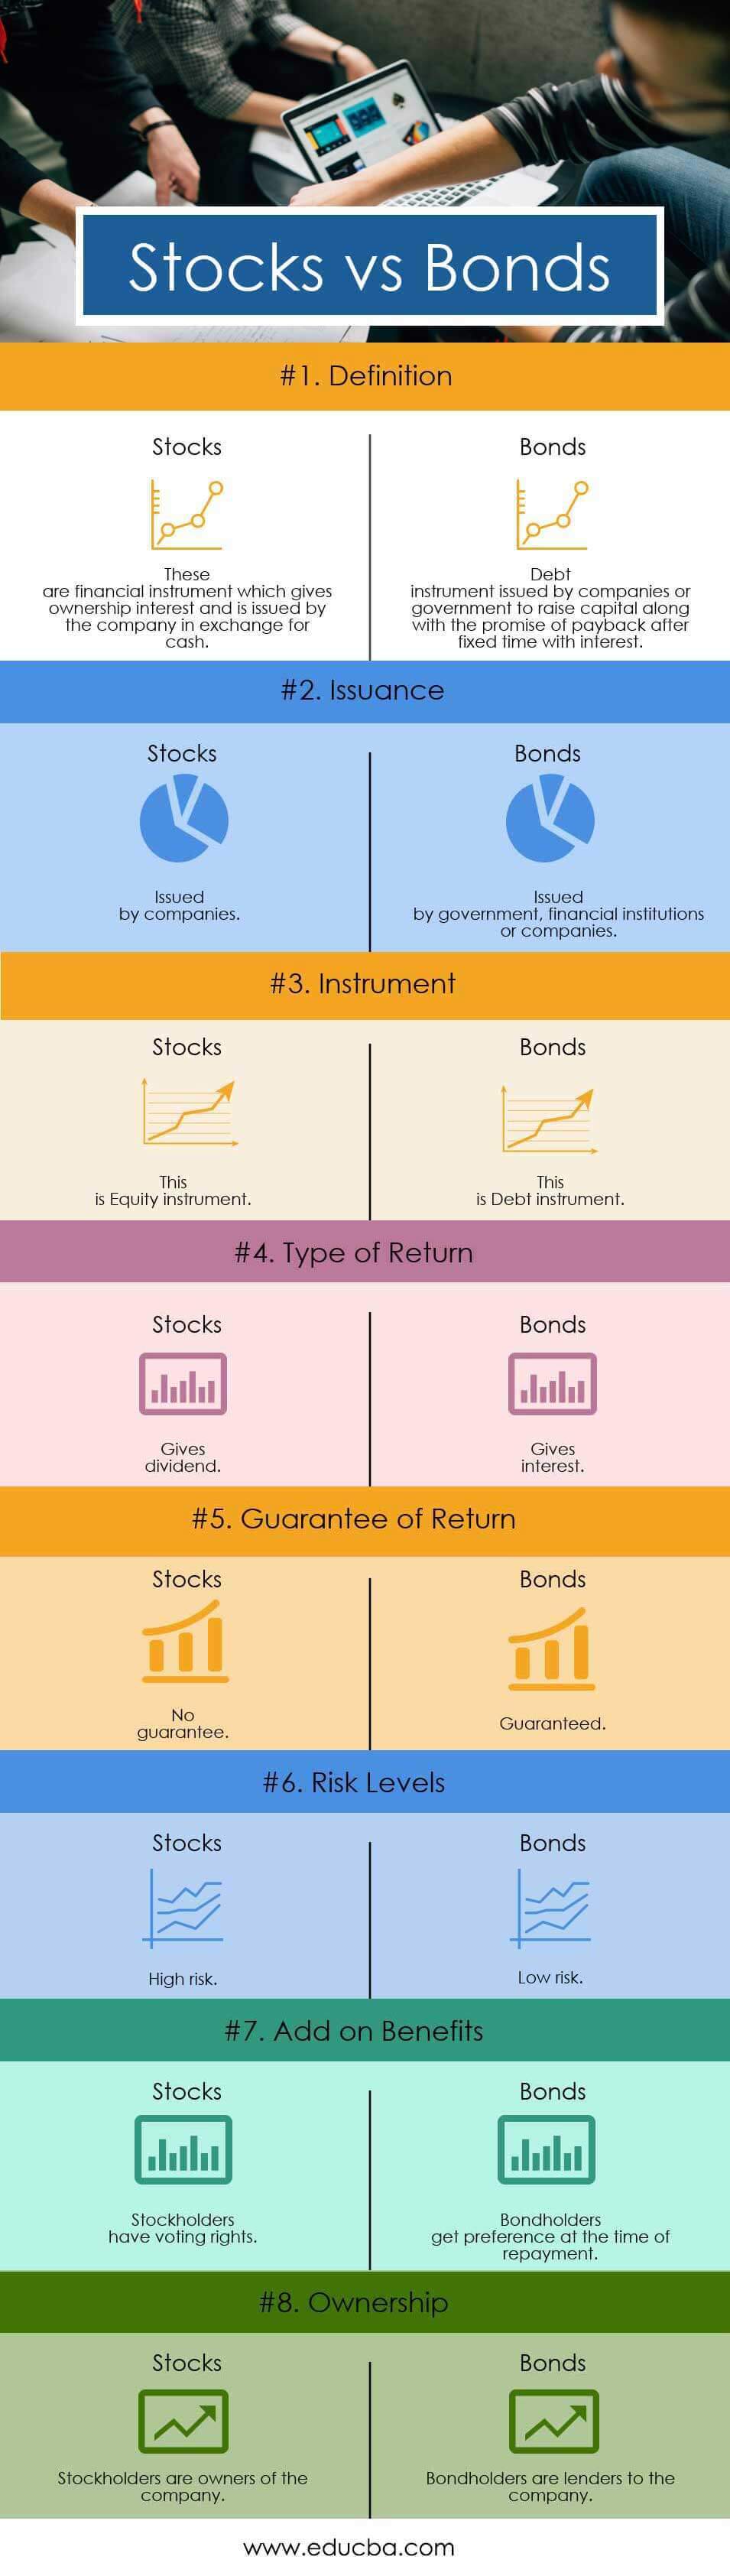 Stocks-vs-Bonds-info